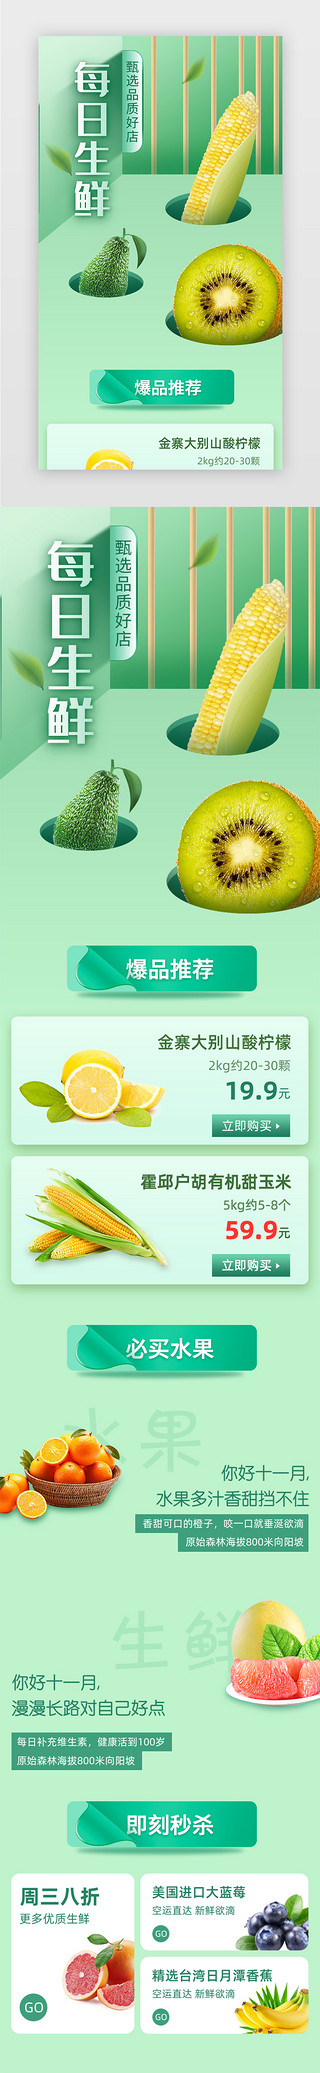 文艺手绘小清新UI设计素材_绿色小清新水果生鲜H5活动页